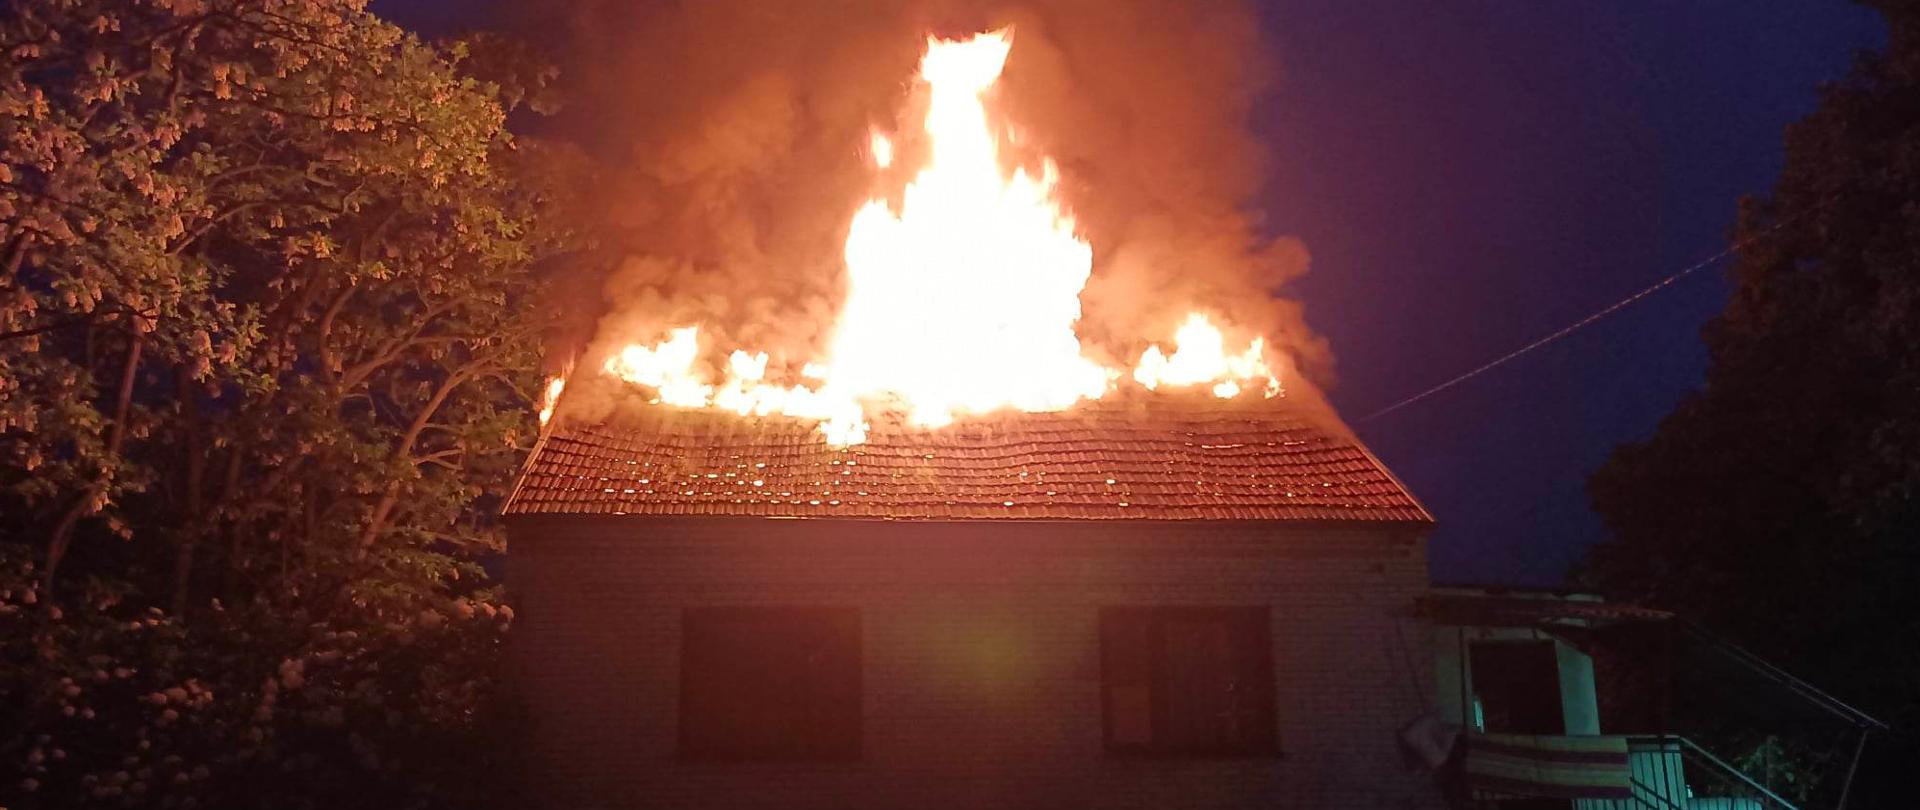 Dom parterowy jednorodzinny na którym widać wydobywające się przez dach płomienie. Na zdjęciu jest ciemno, po lewej stronie widać drzewo.